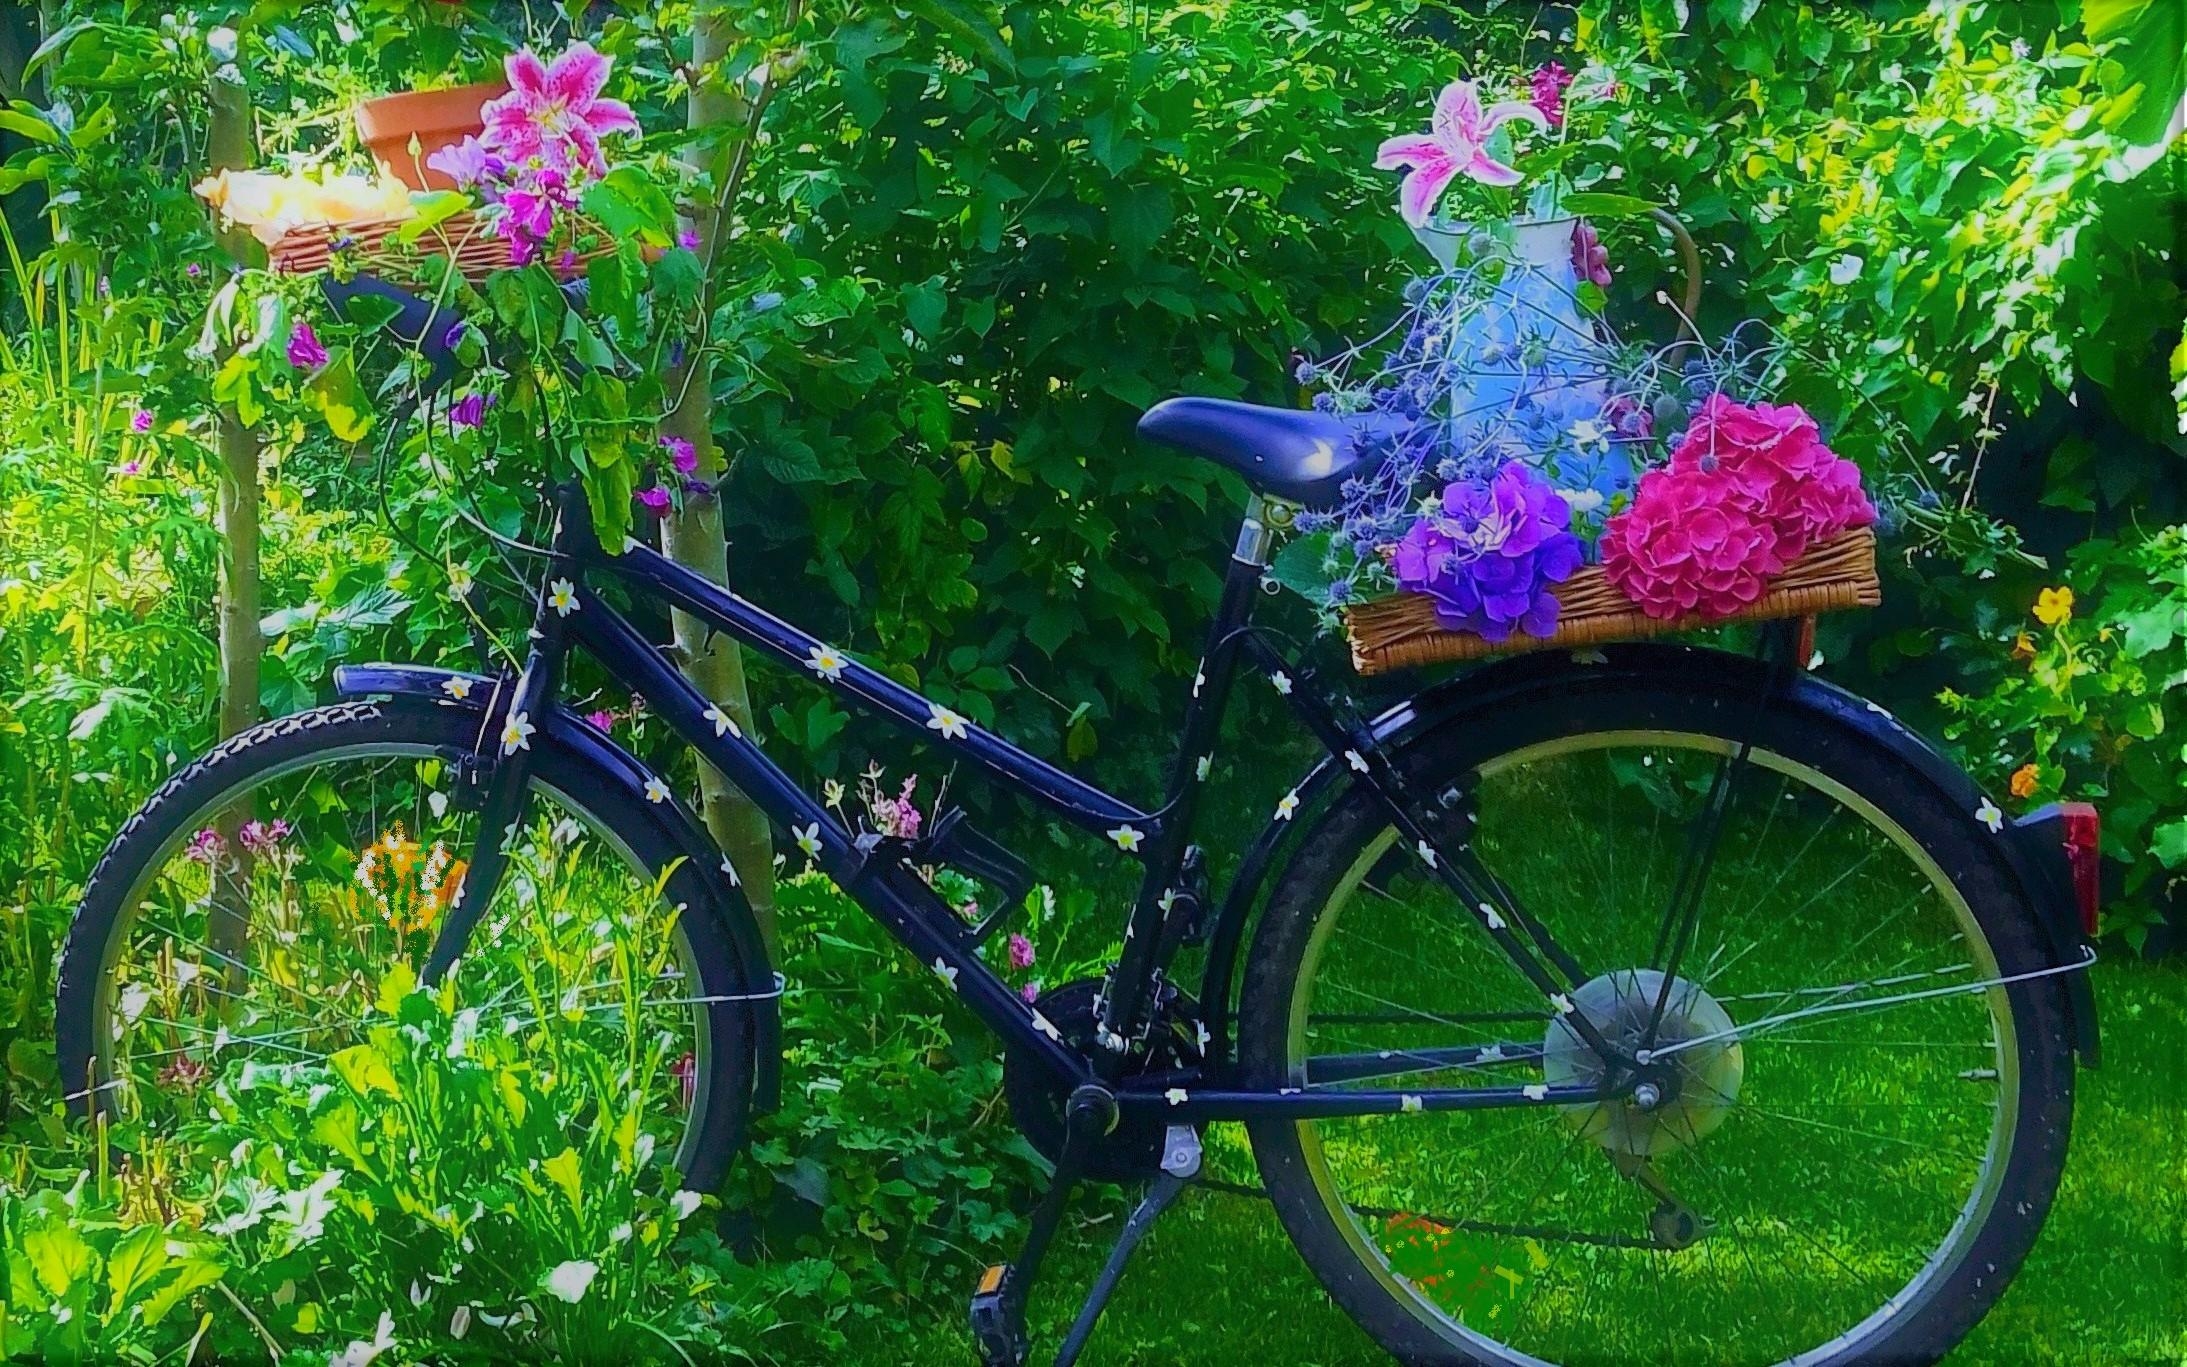 #FahrradliebtBlumen #Gartenimpression  #couchliebt